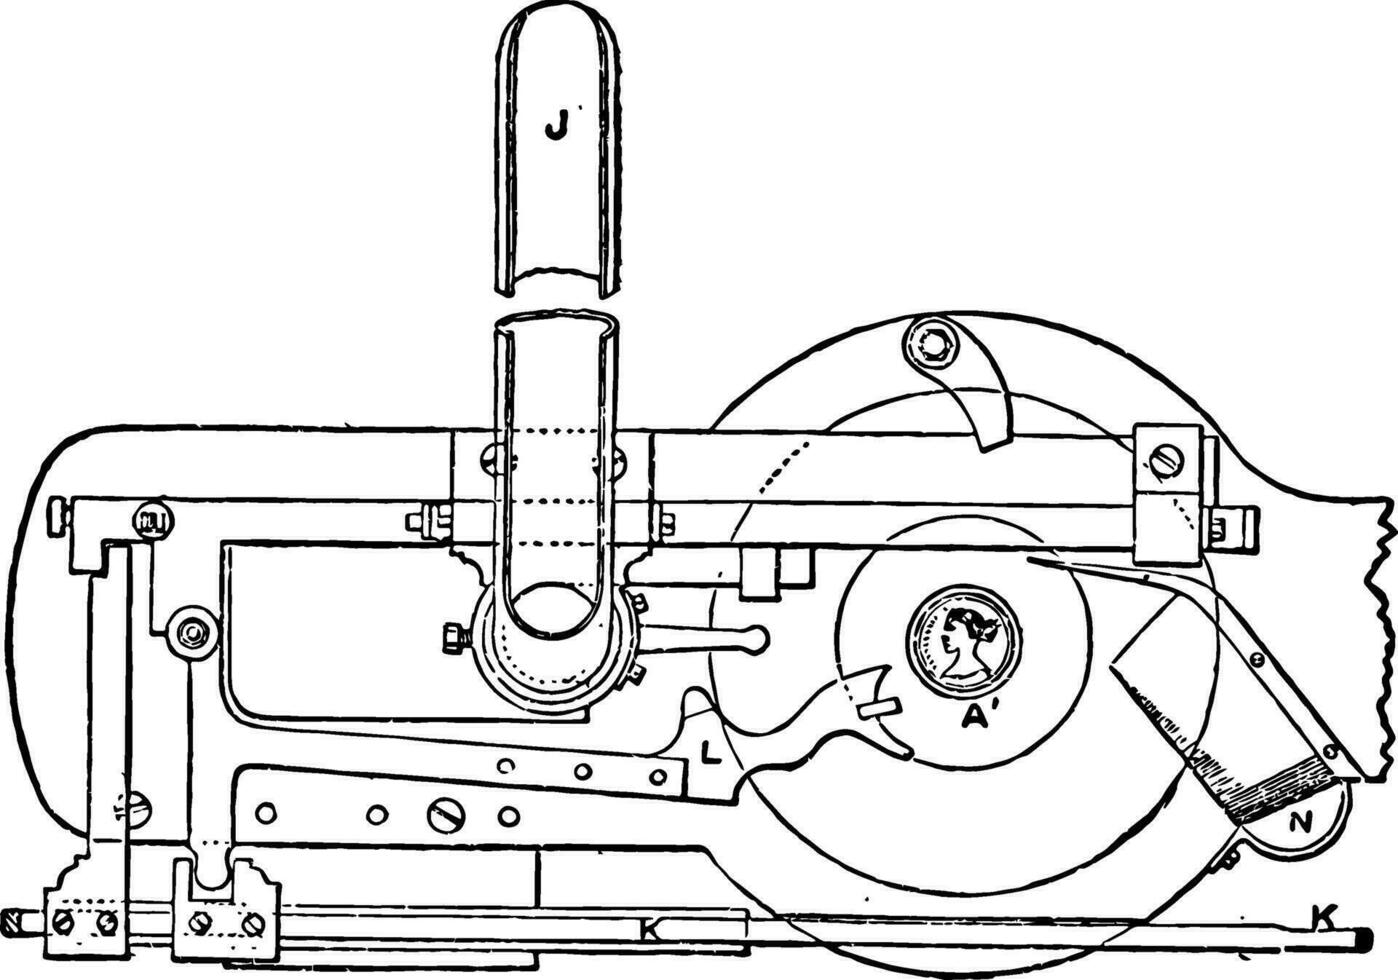 mechanisme van munt slaan druk op van Koninklijk munt wijnoogst illustratie. vector